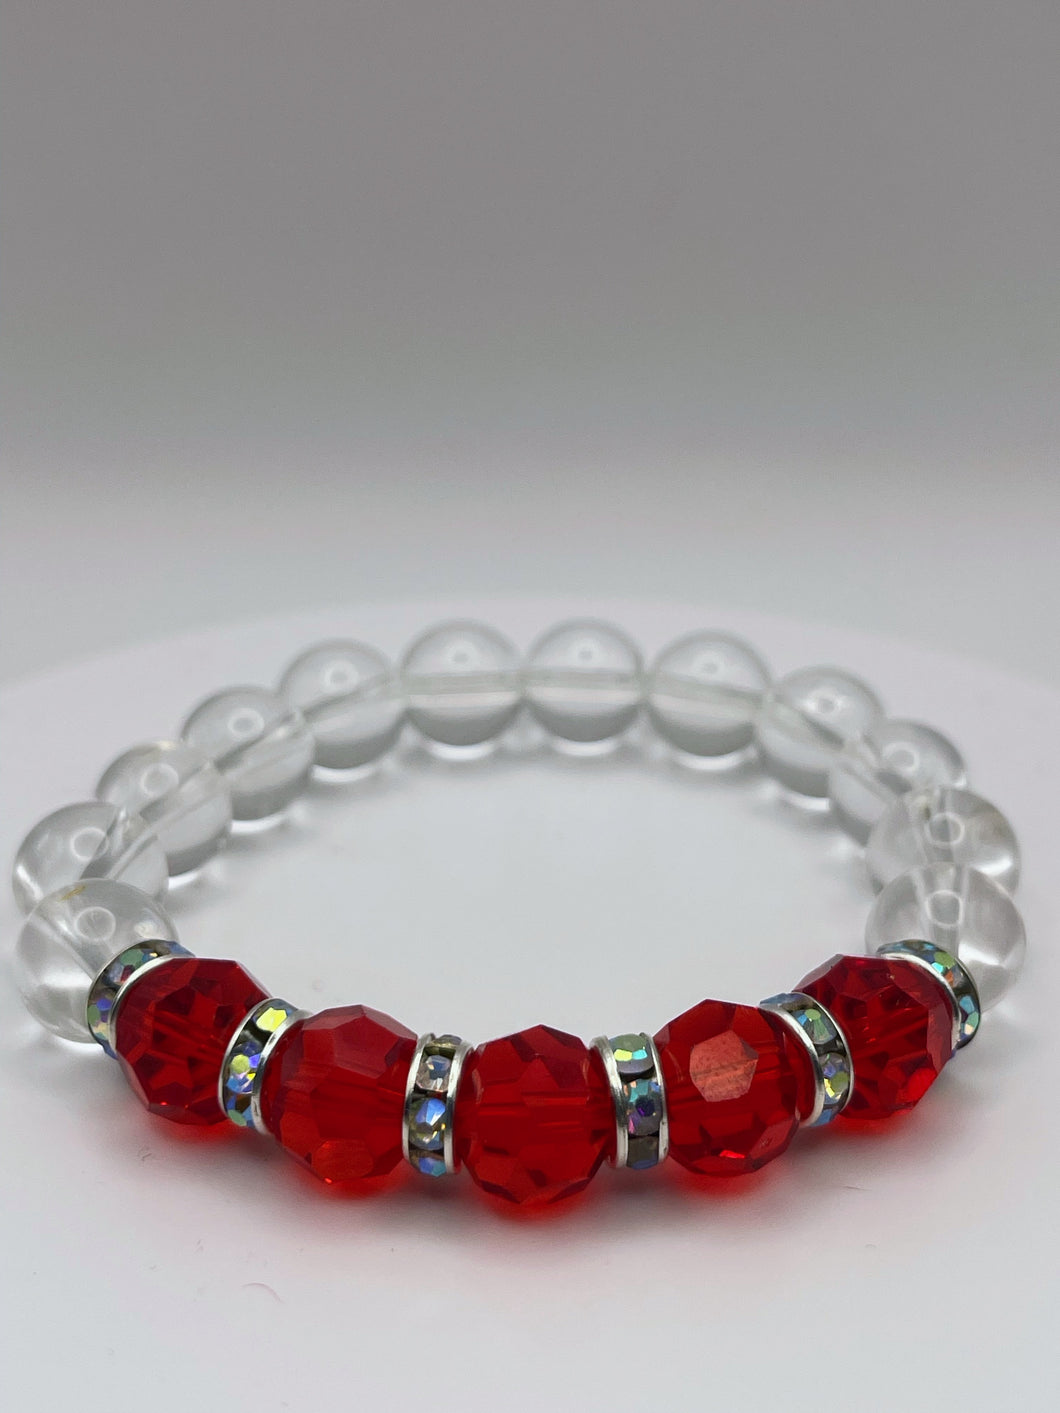 Clear quartz/Red glass beaded bracelet